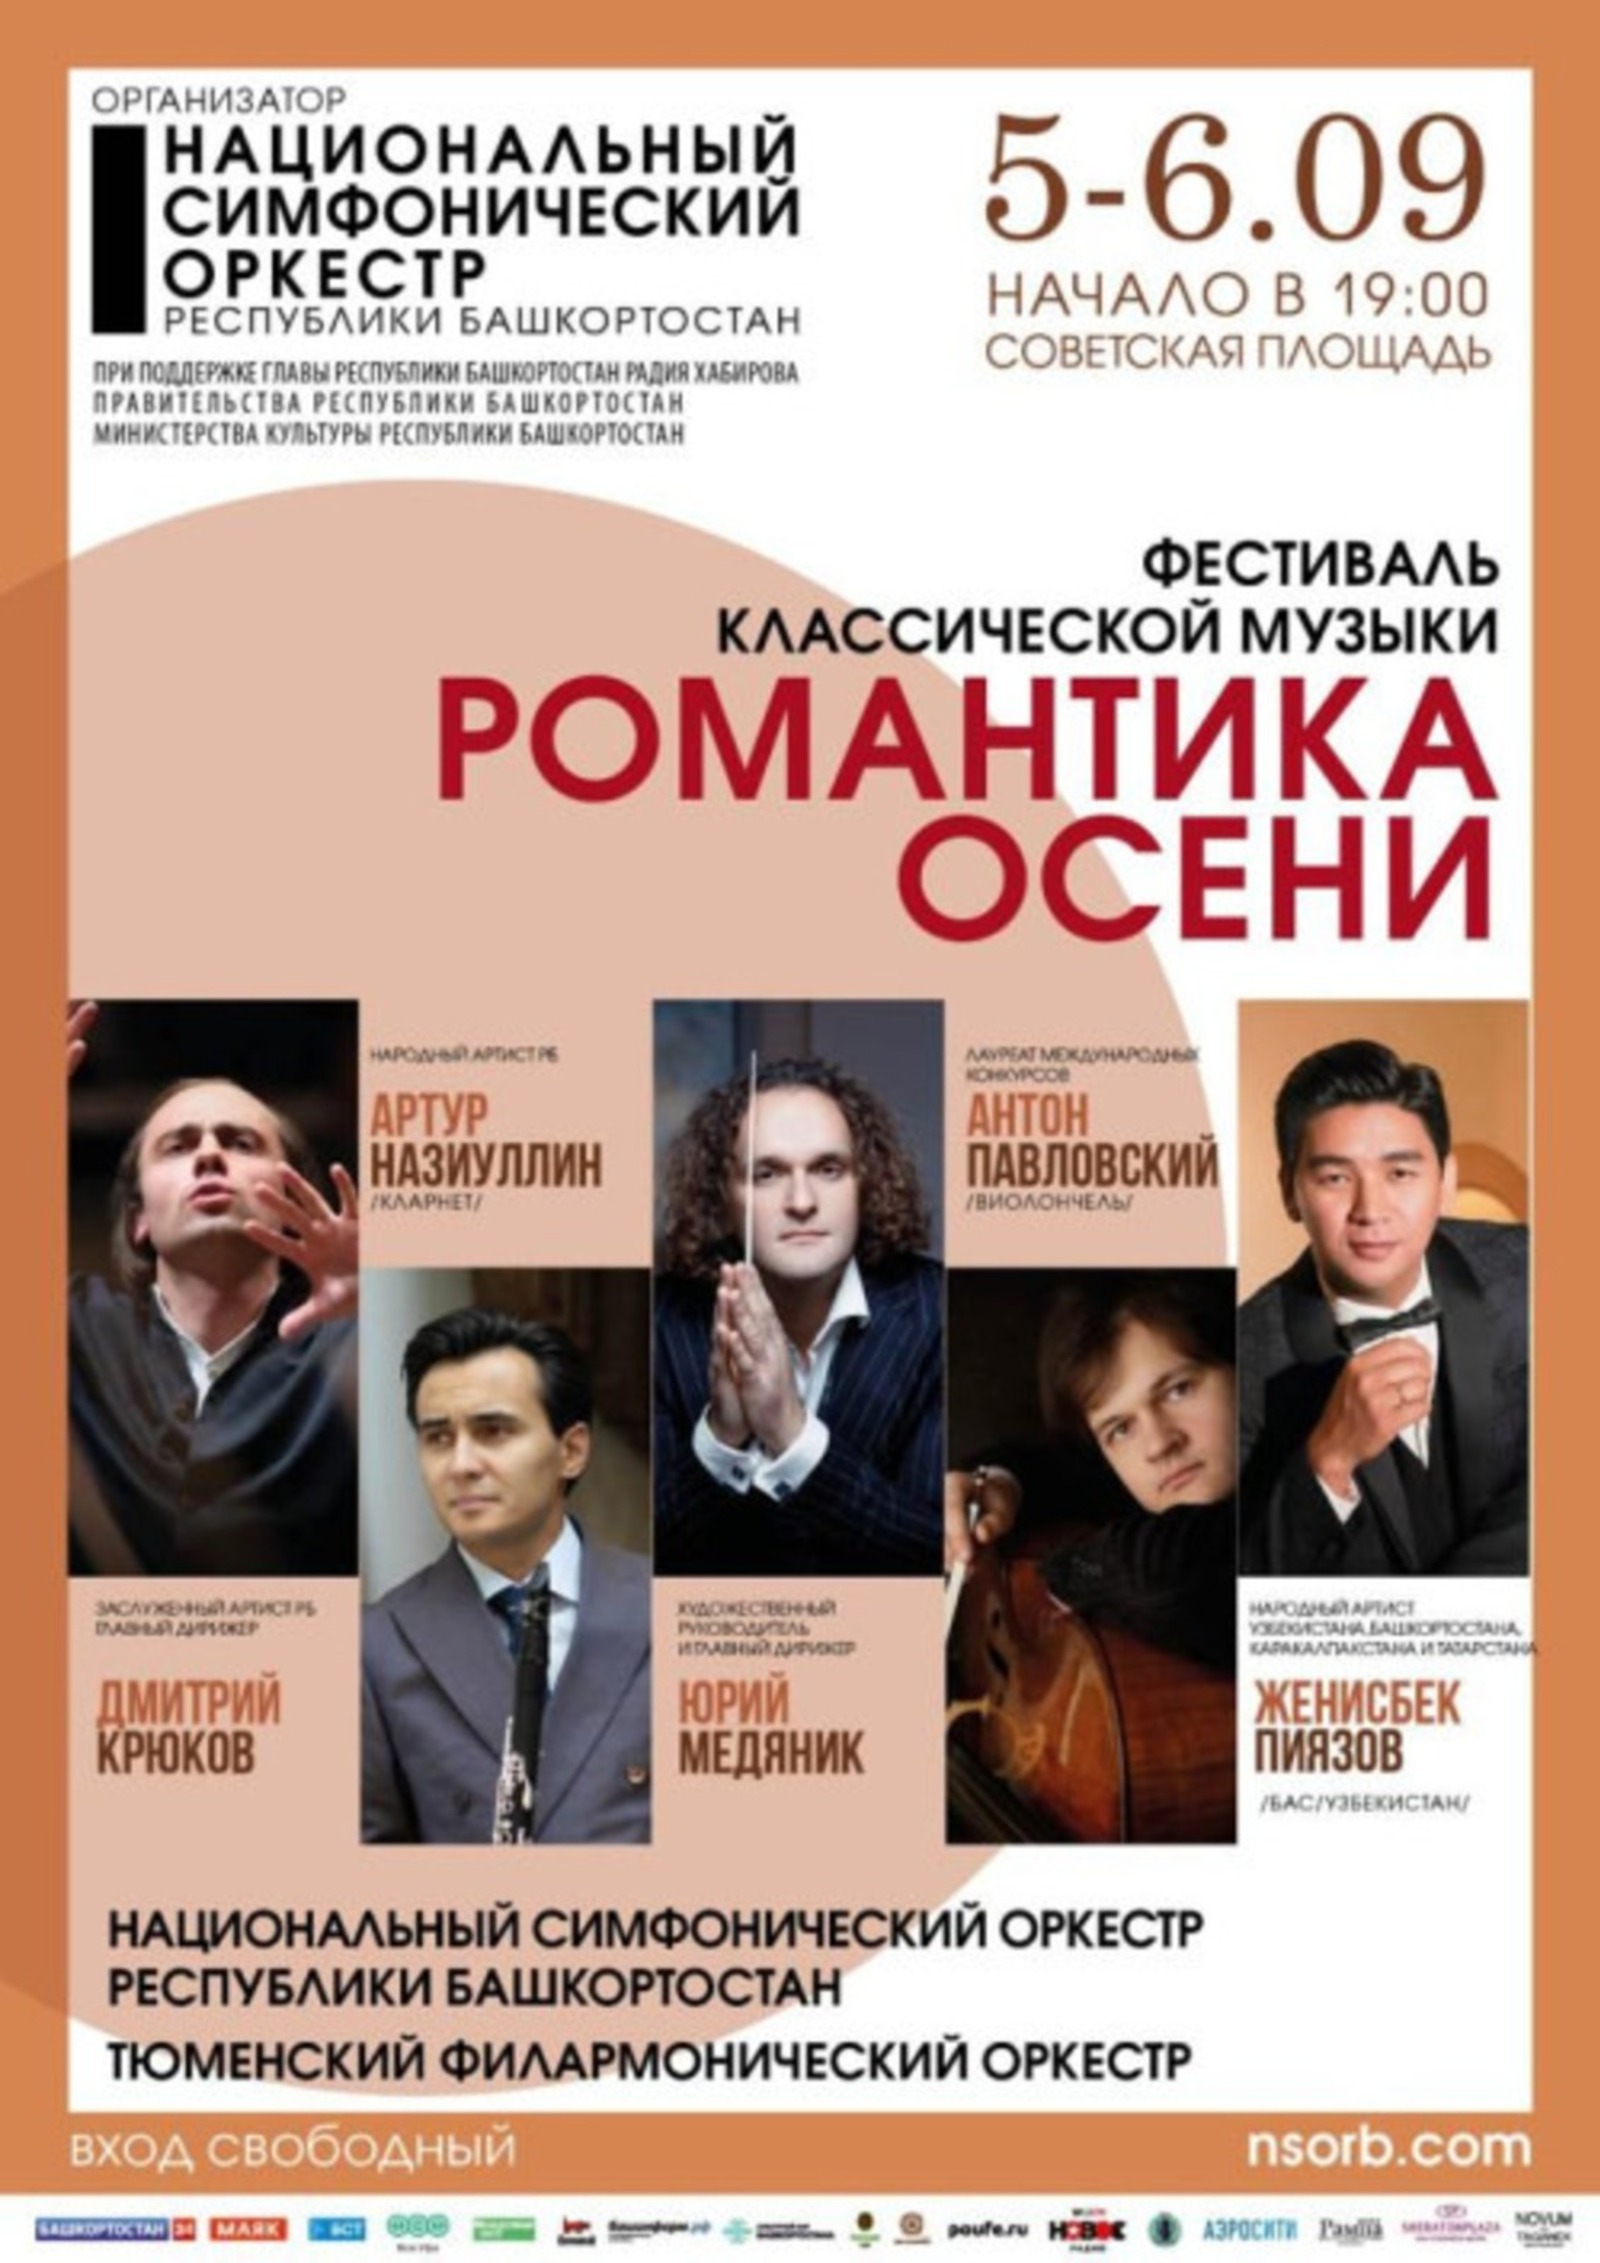 В Башкирии стартует фестиваль классической музыки «Романтика осени»